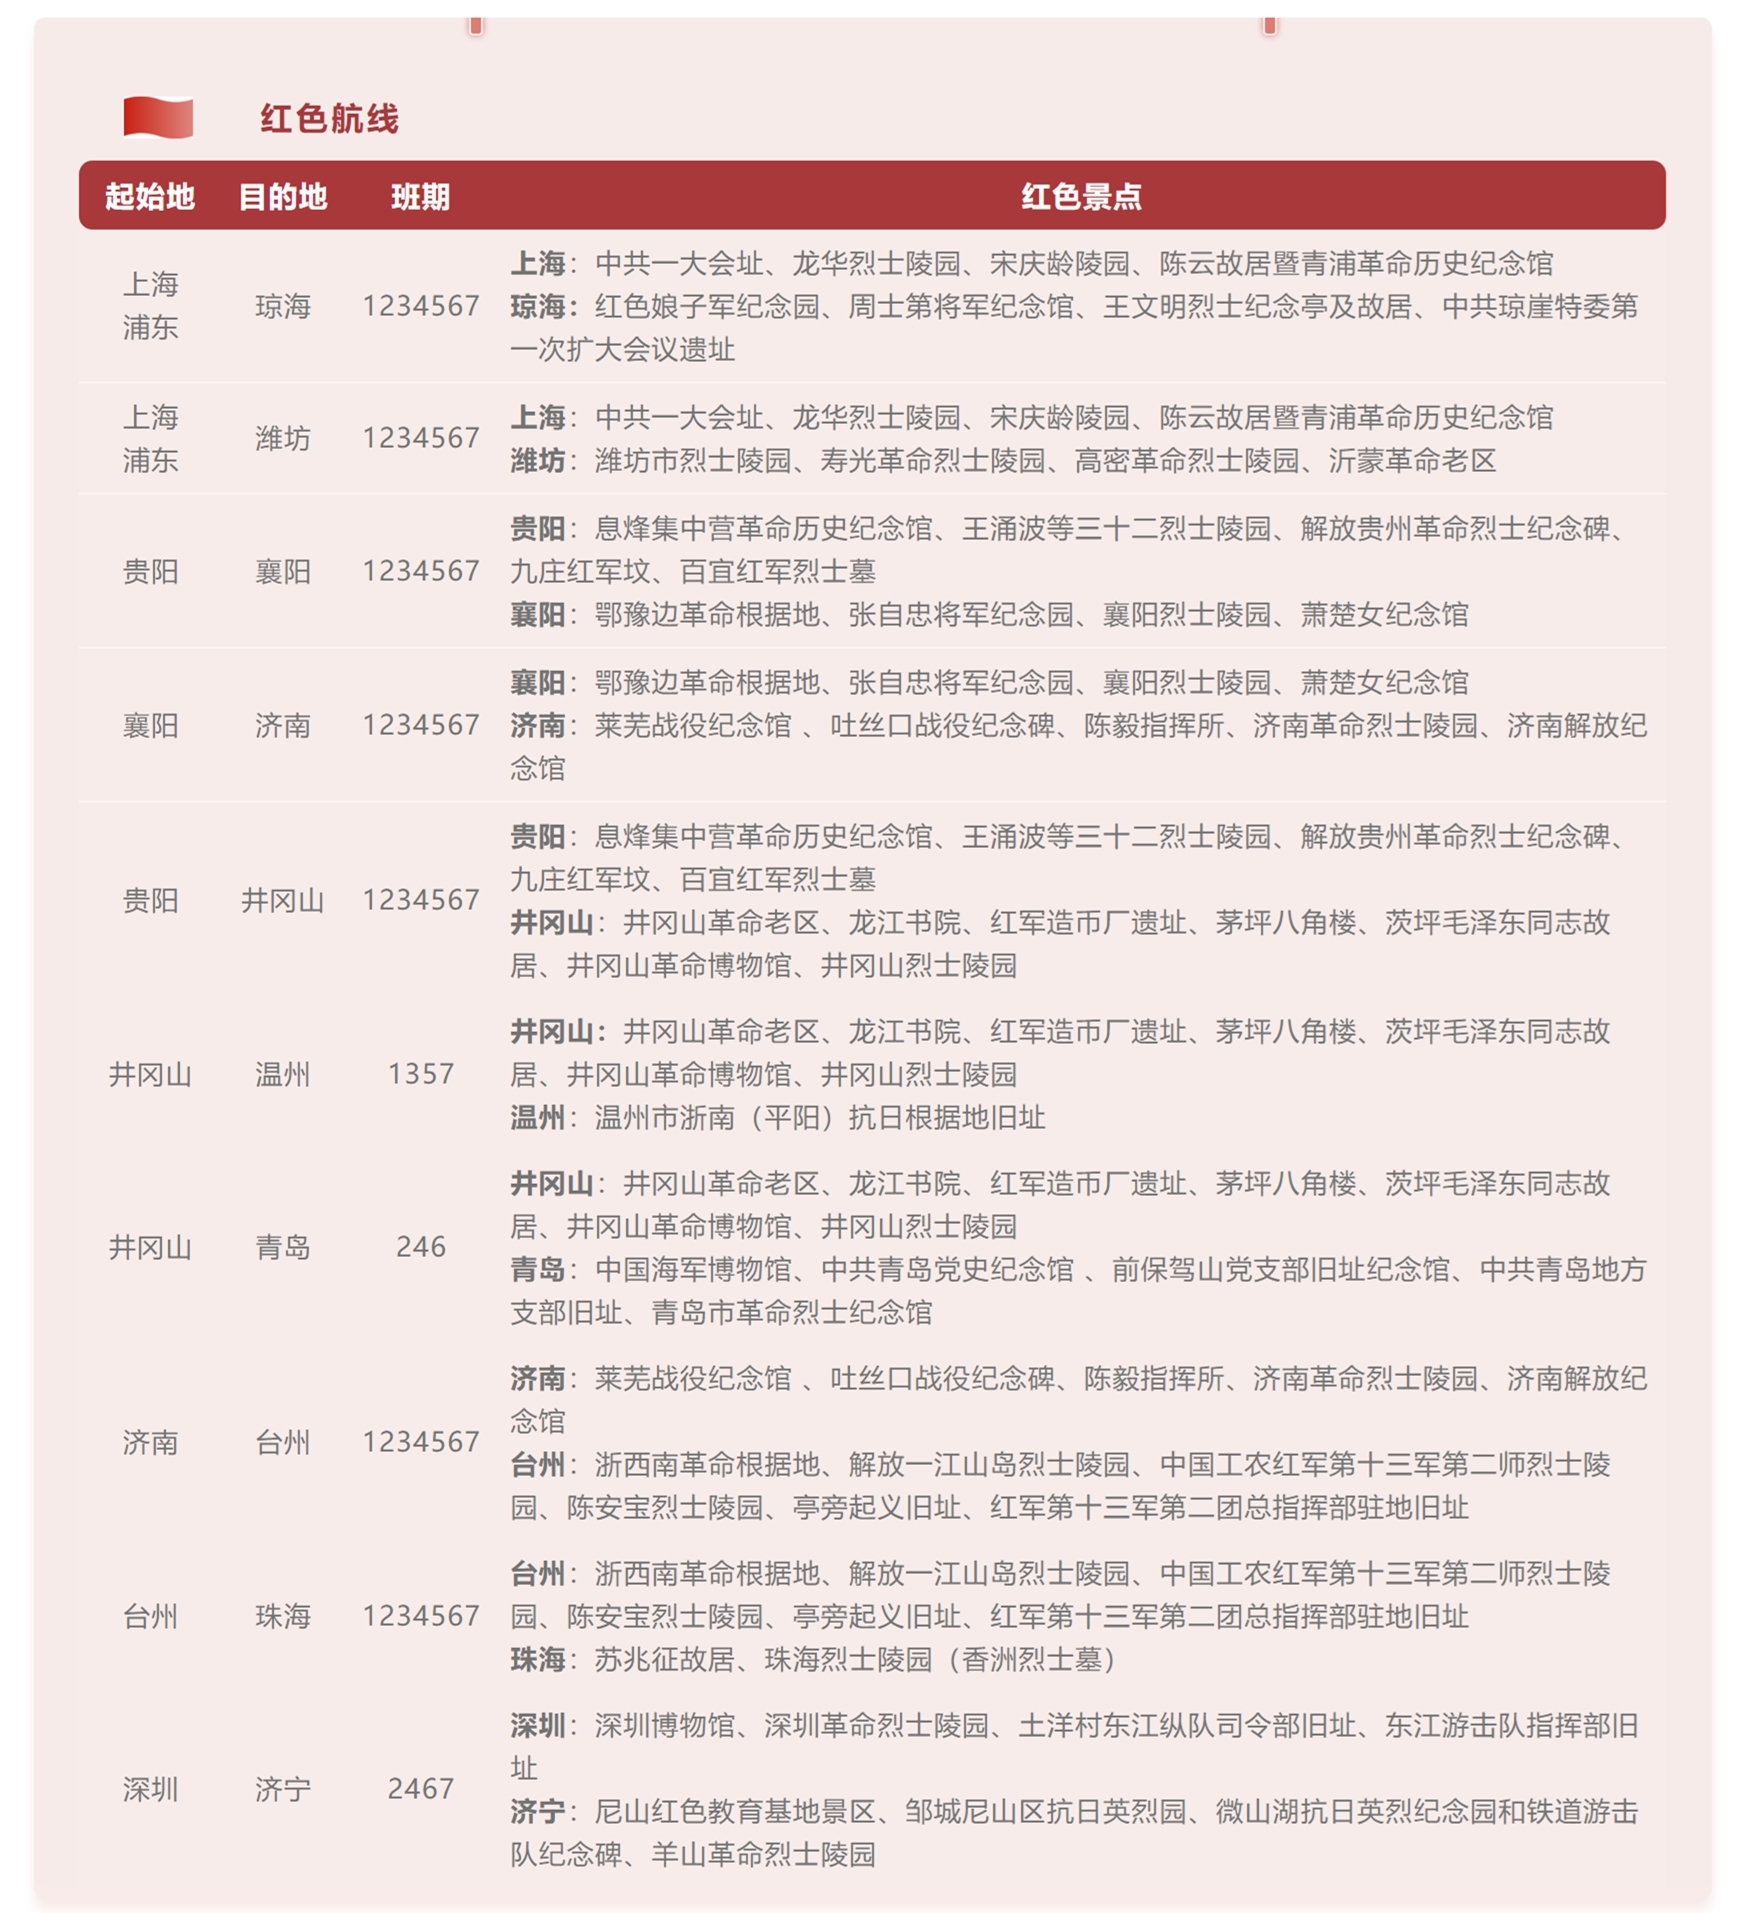 陆续开通温州=井冈山（浙西南革命根据地）、青岛=井冈山、珠海=台州等10条红色航线
-巴拿马城海运费